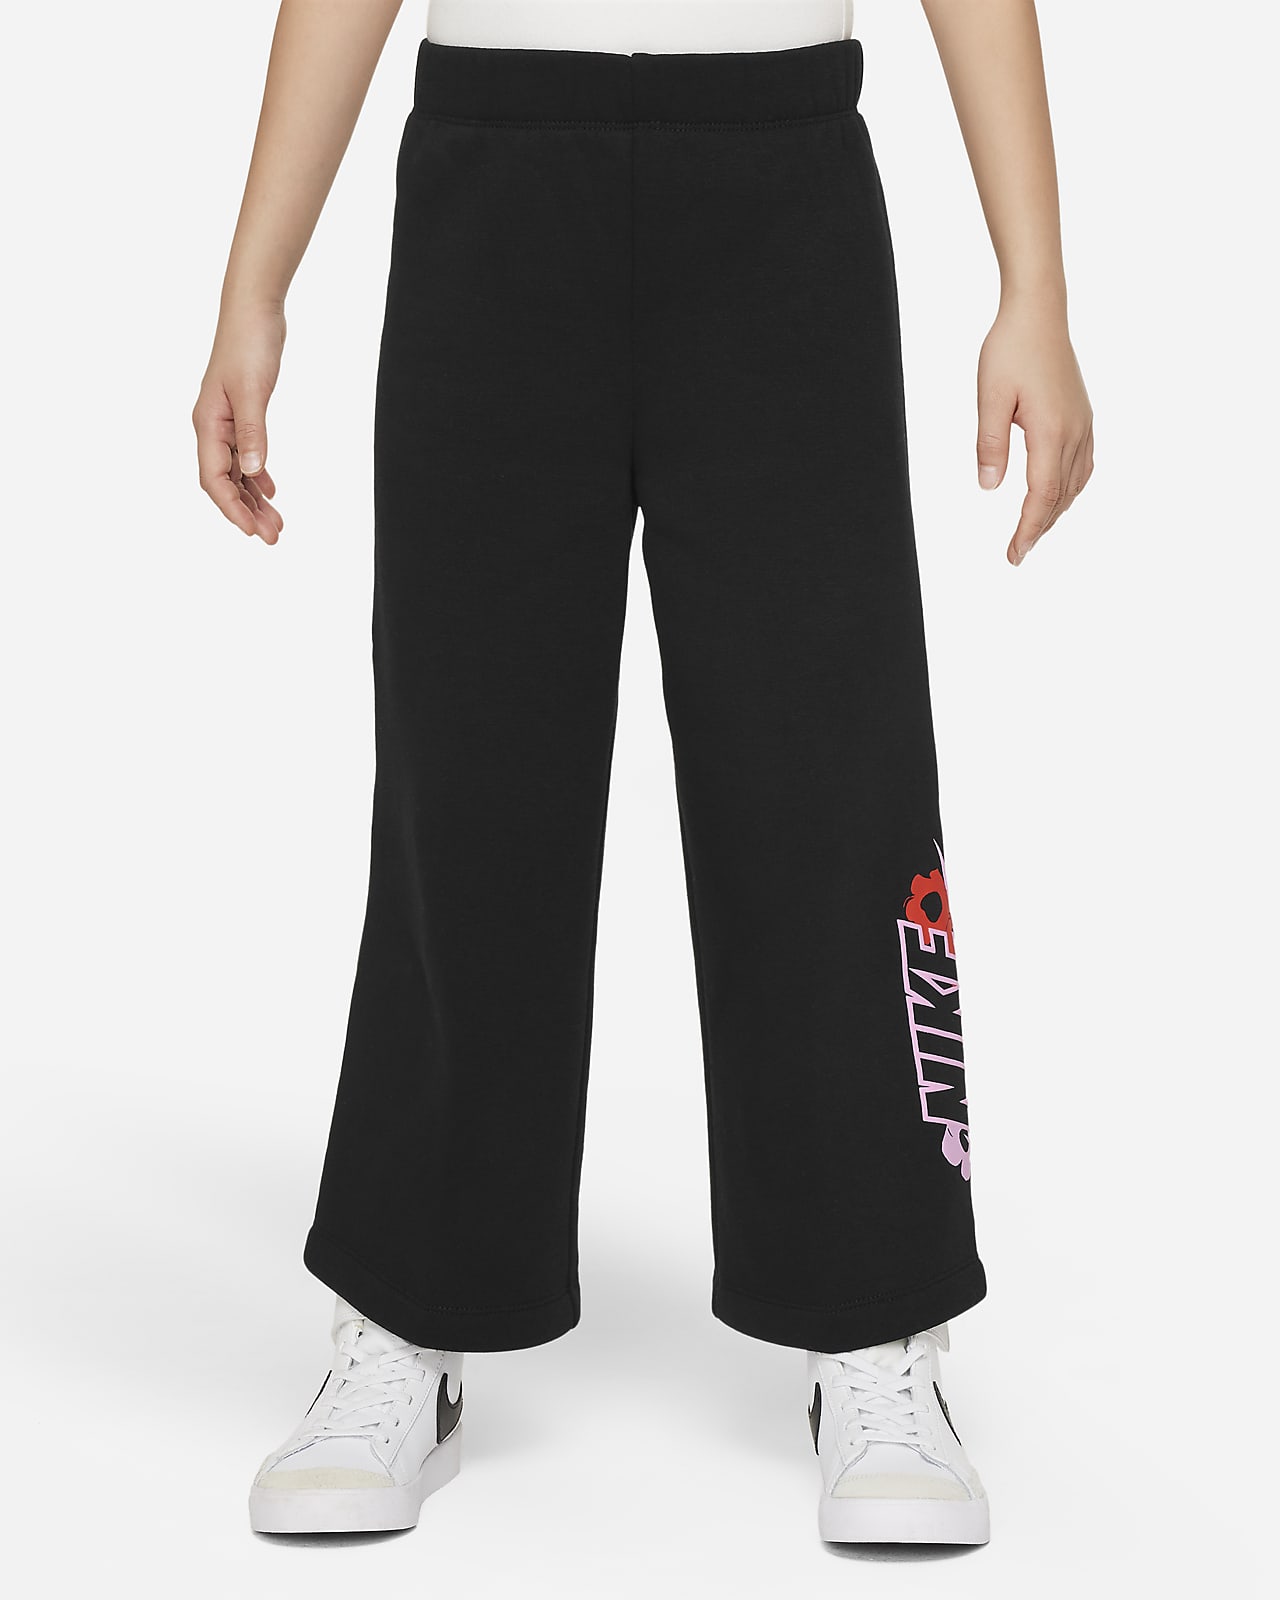 Kalhoty Nike Floral Fleece s širokými nohavicemi pro malé děti